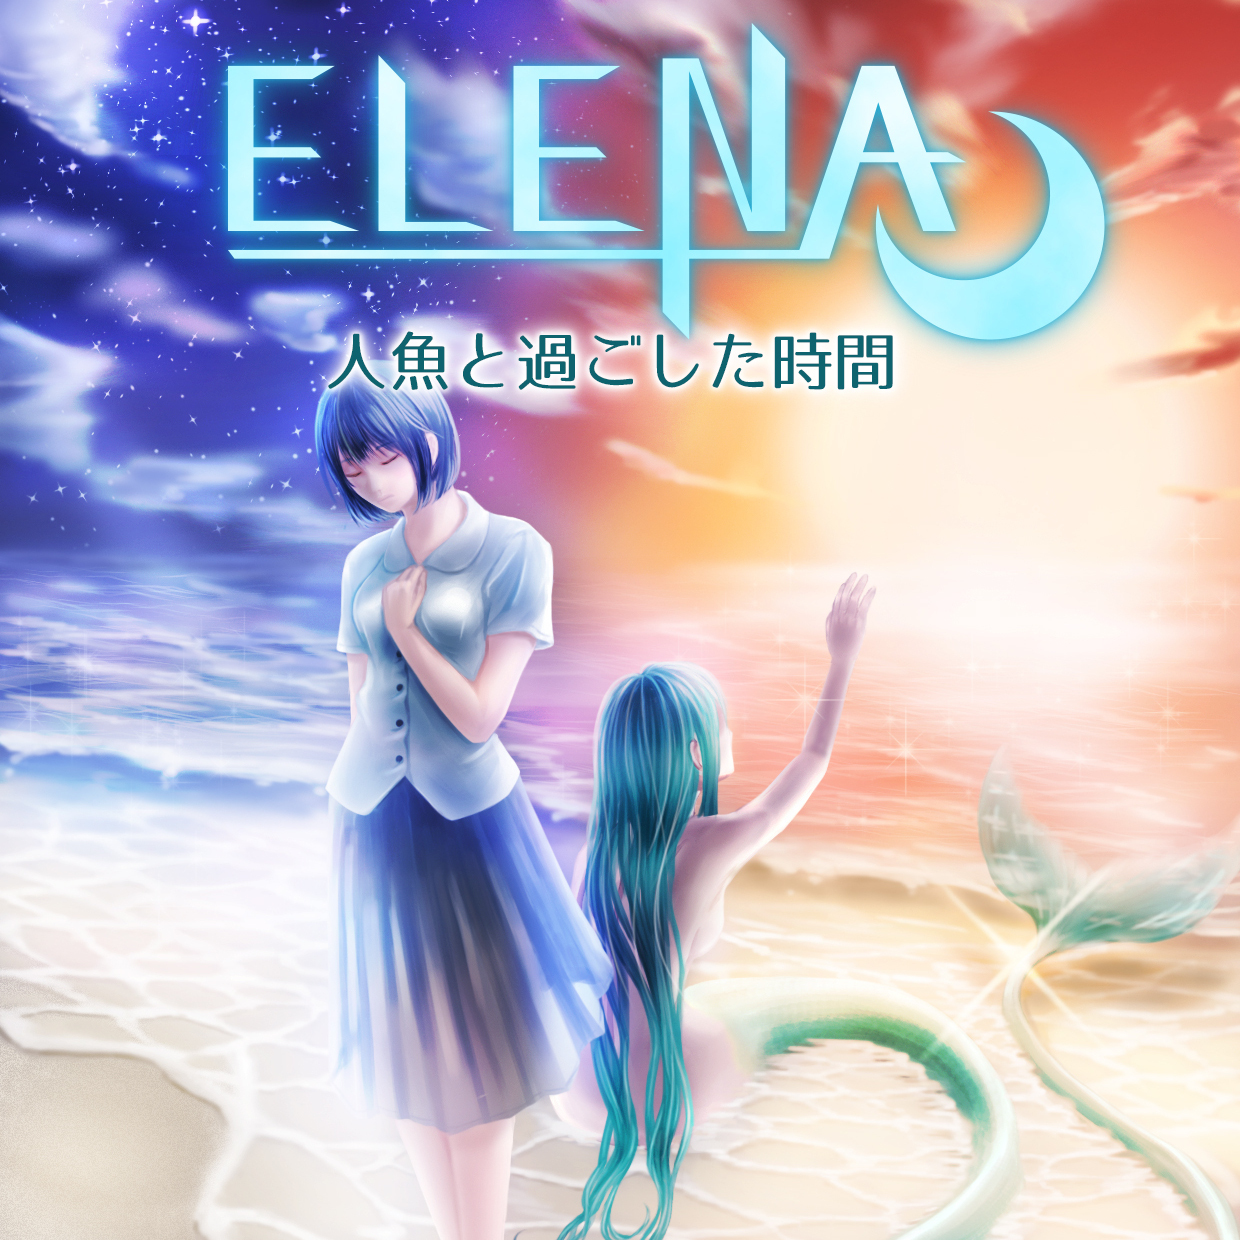 電子書籍「ELENA 人魚と過ごした時間」の販売を開始しました